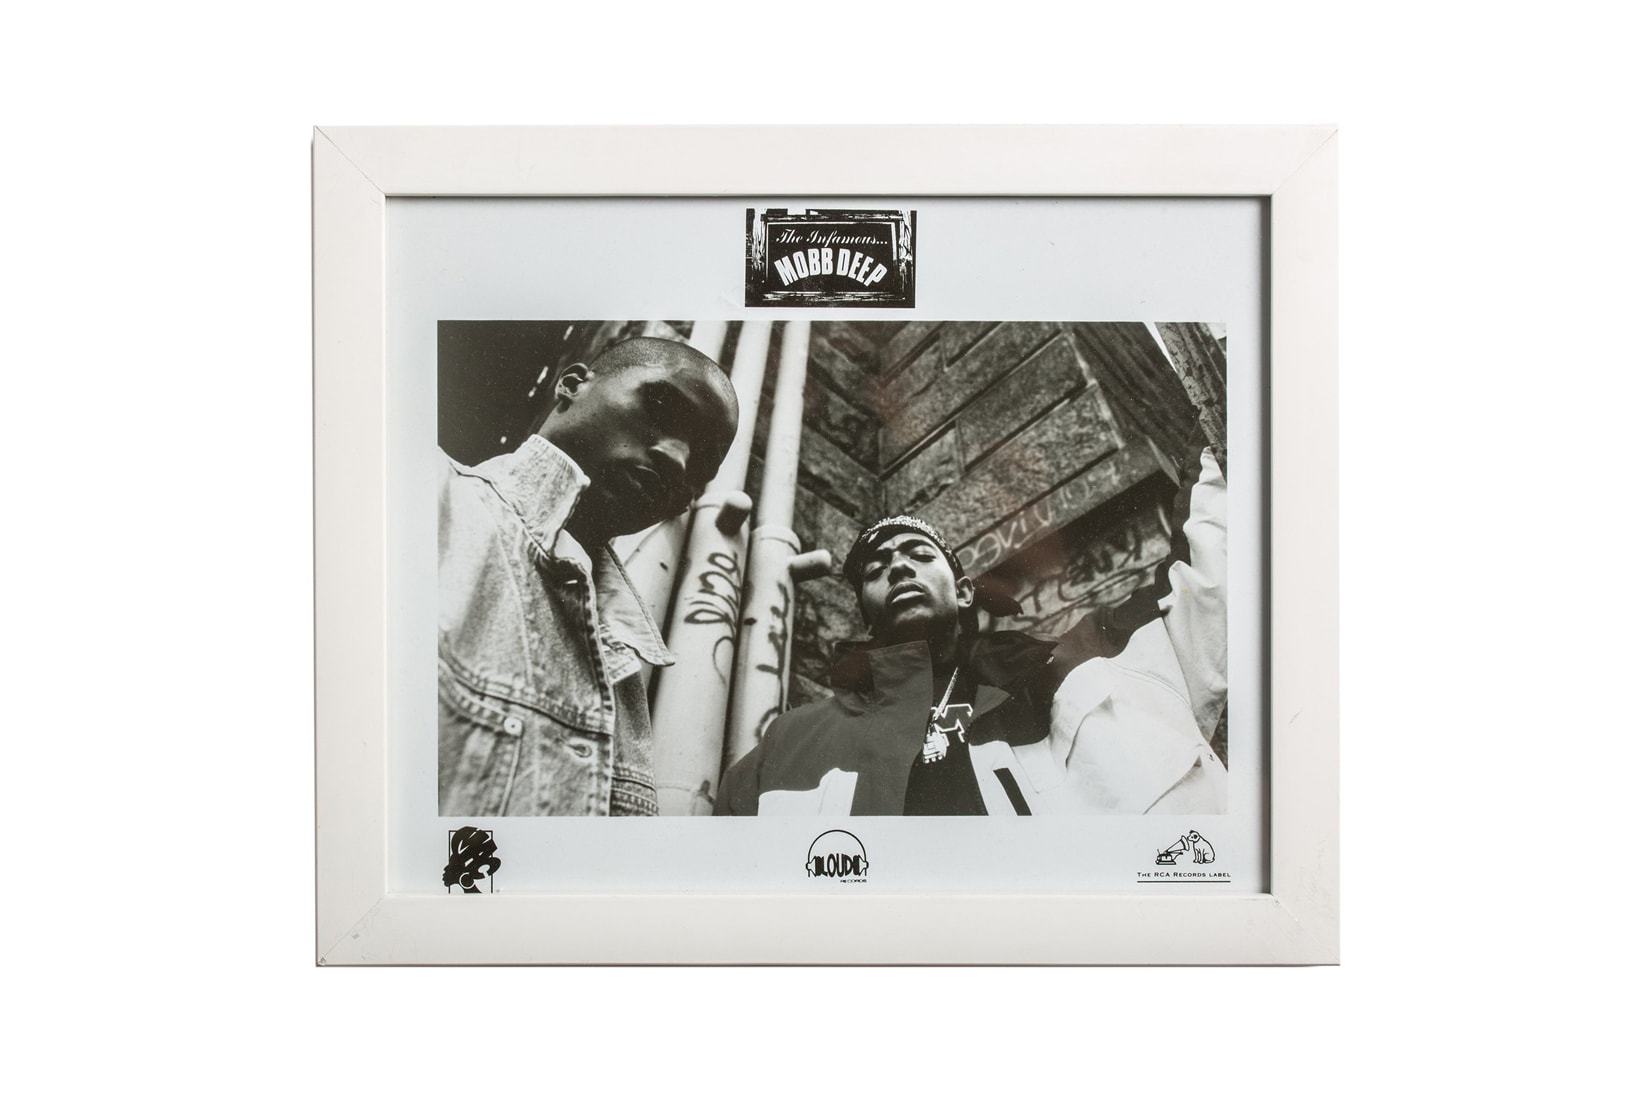 Avi Gold Better™ Gift Shop Clothing Apparel Accessories Collectibles Vintage Albums Cassettes Books Prints Mobb Deep Nas De La Soul Ice Cube